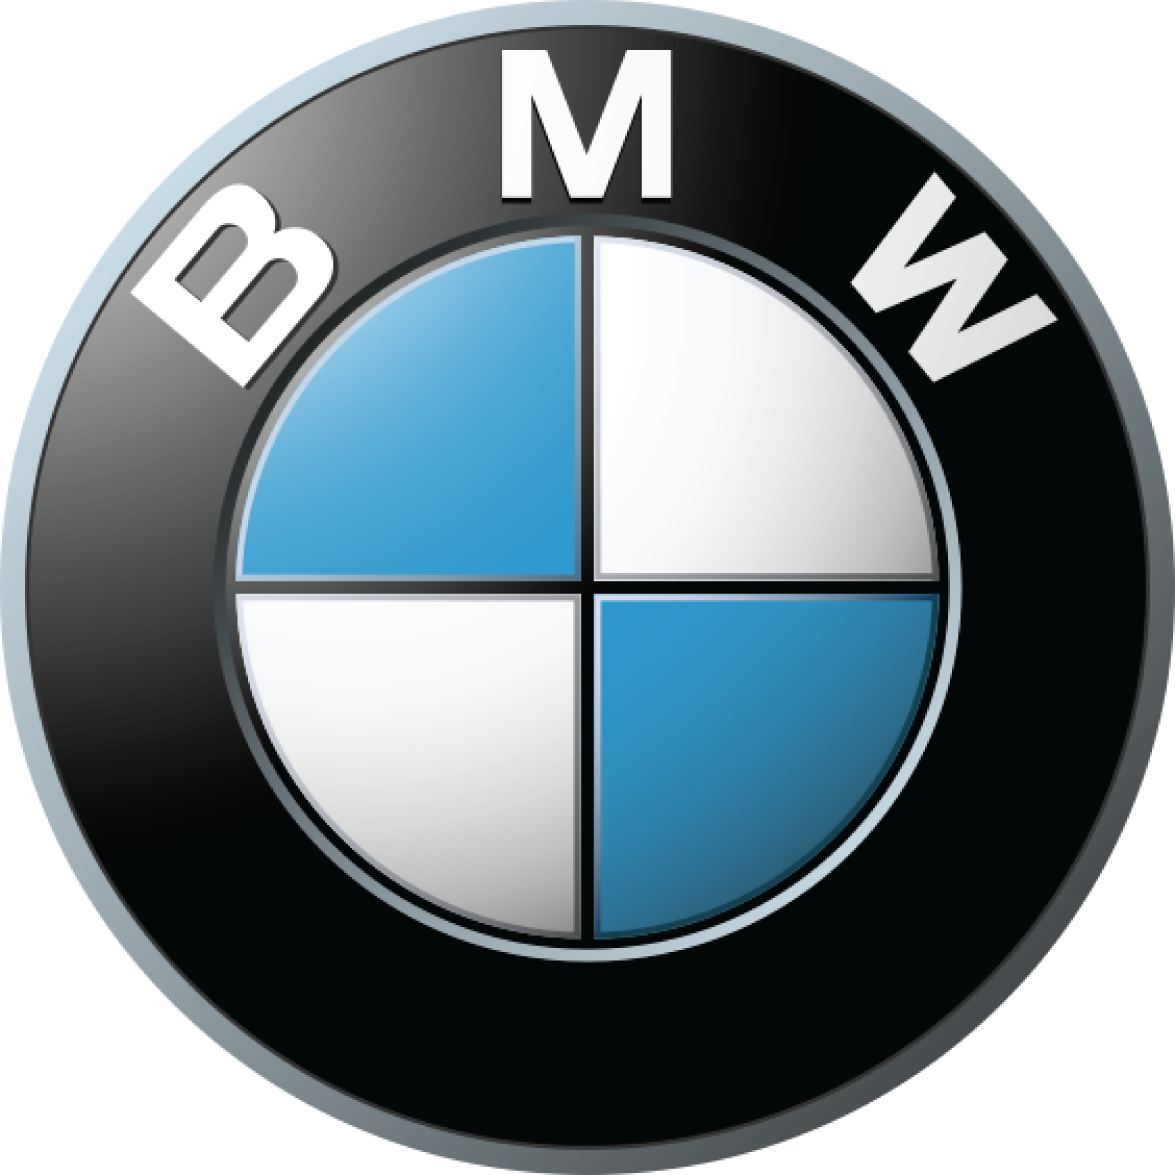 BMW car logo PNG brand image